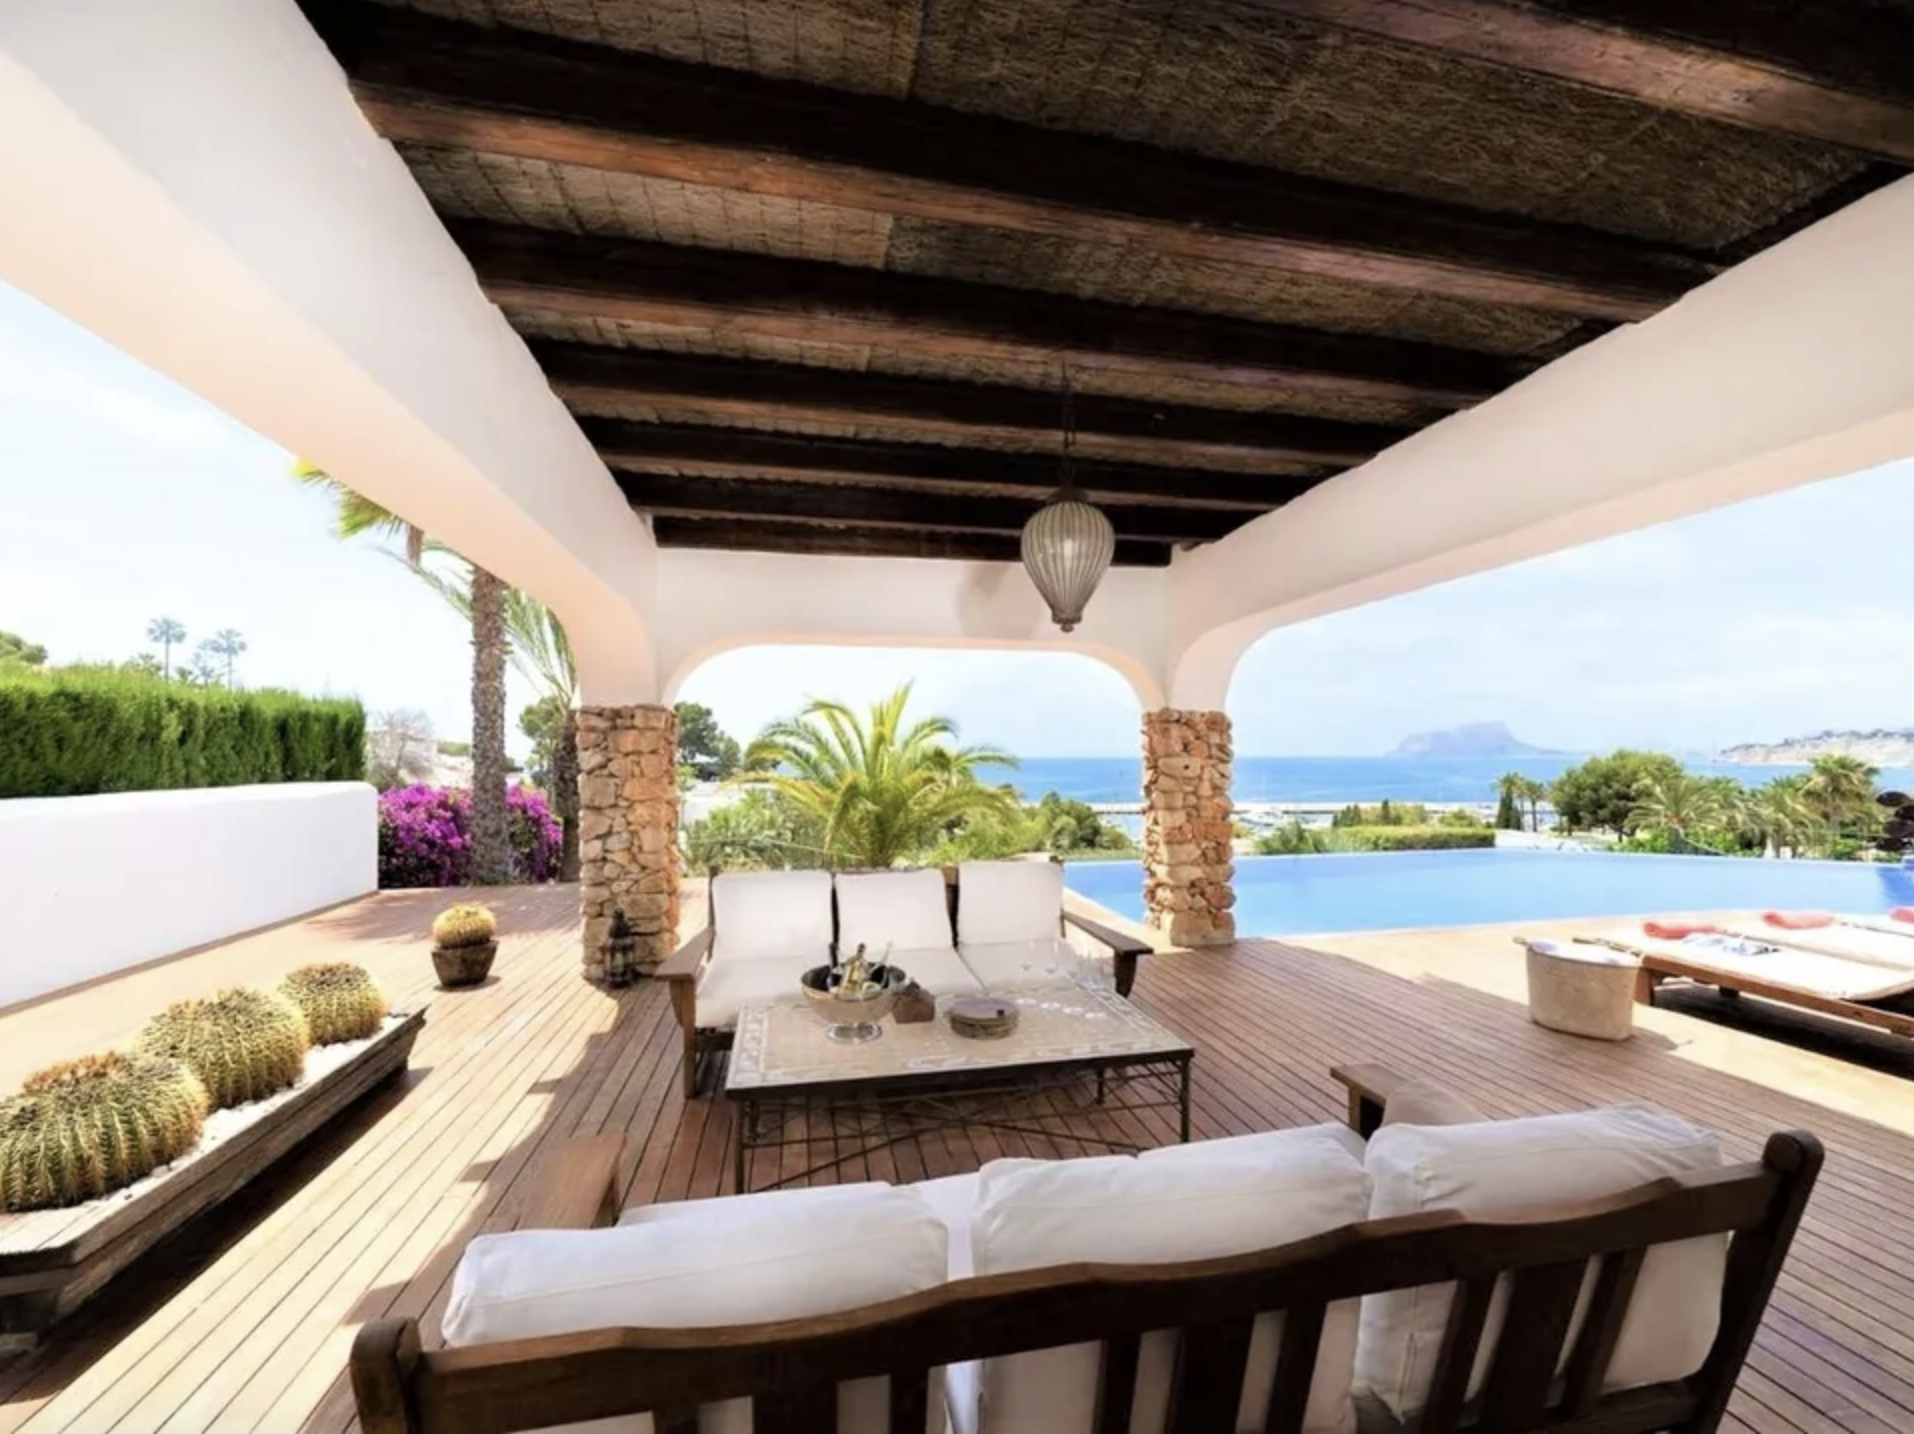 Luxe Ibiza stijl villa in Moraira uitzicht op zee